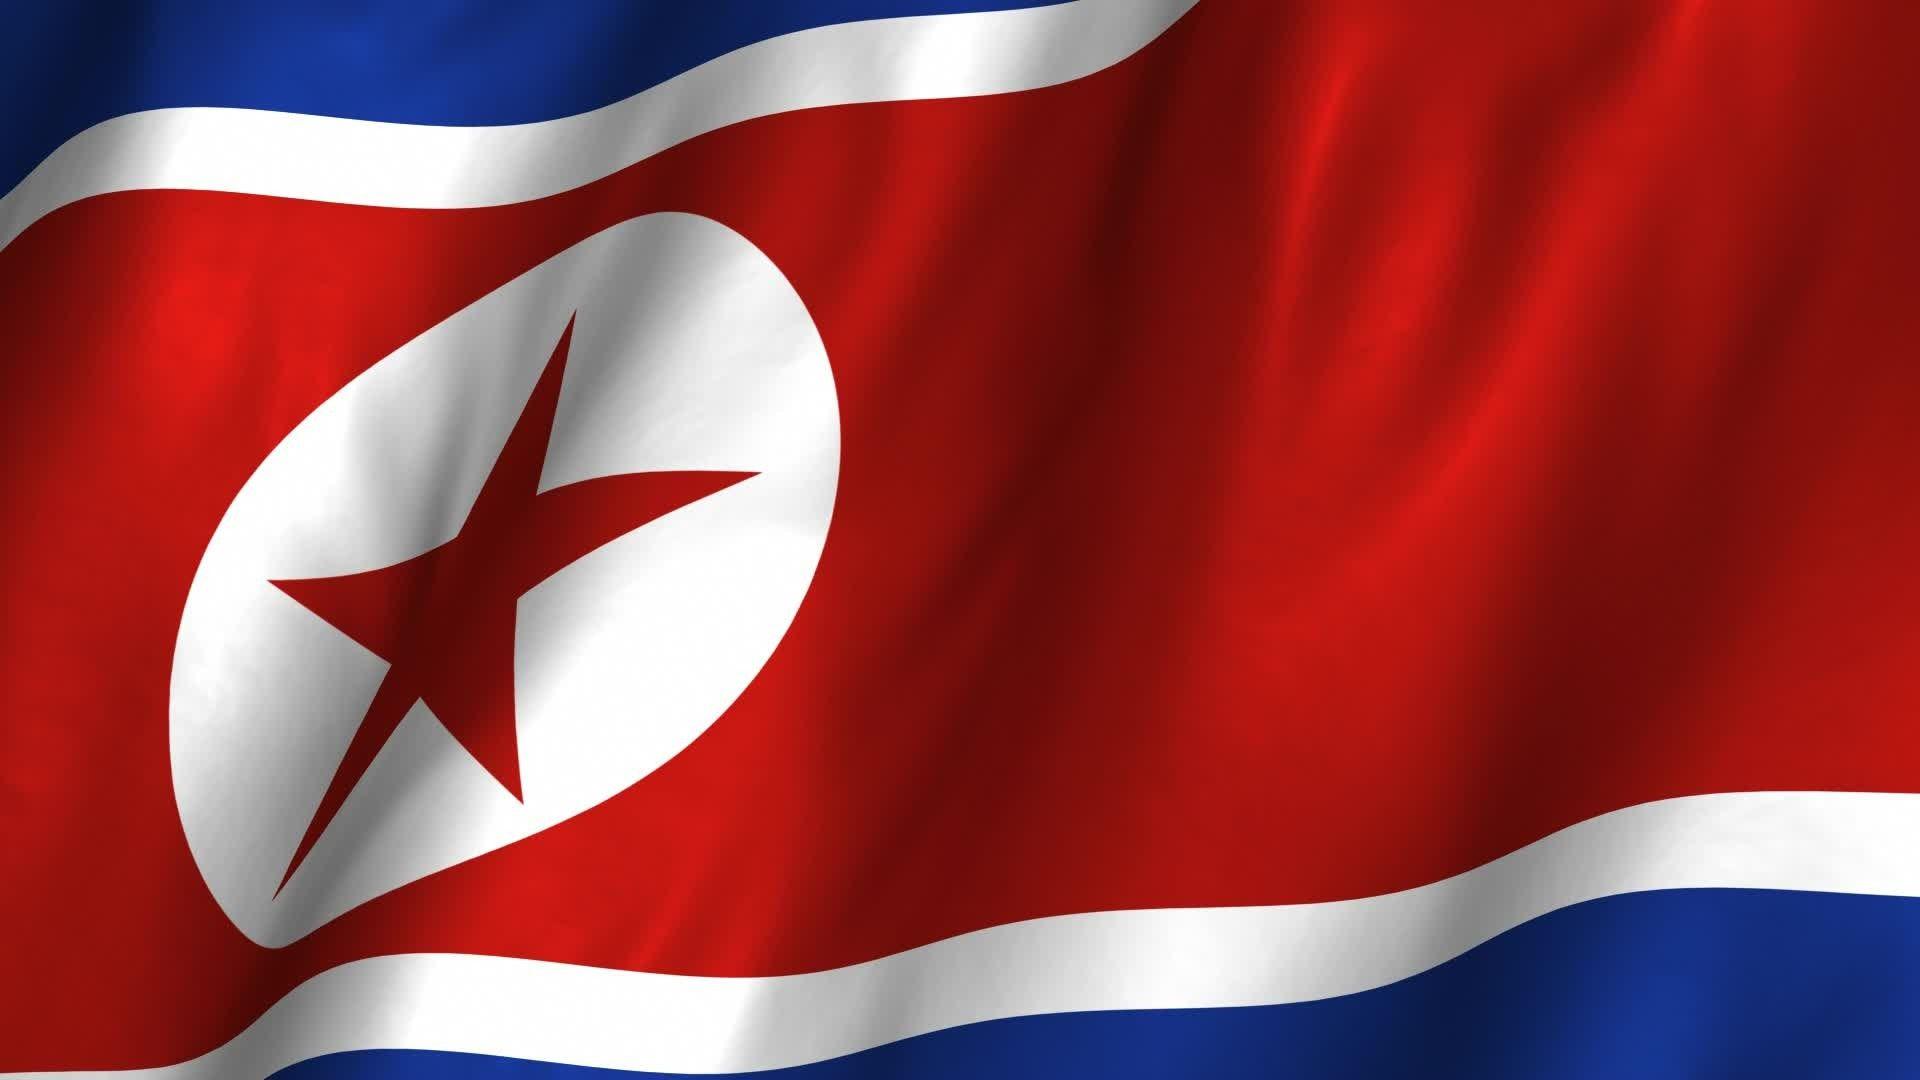 Flag of North Korea wallpaper. Flags wallpaper